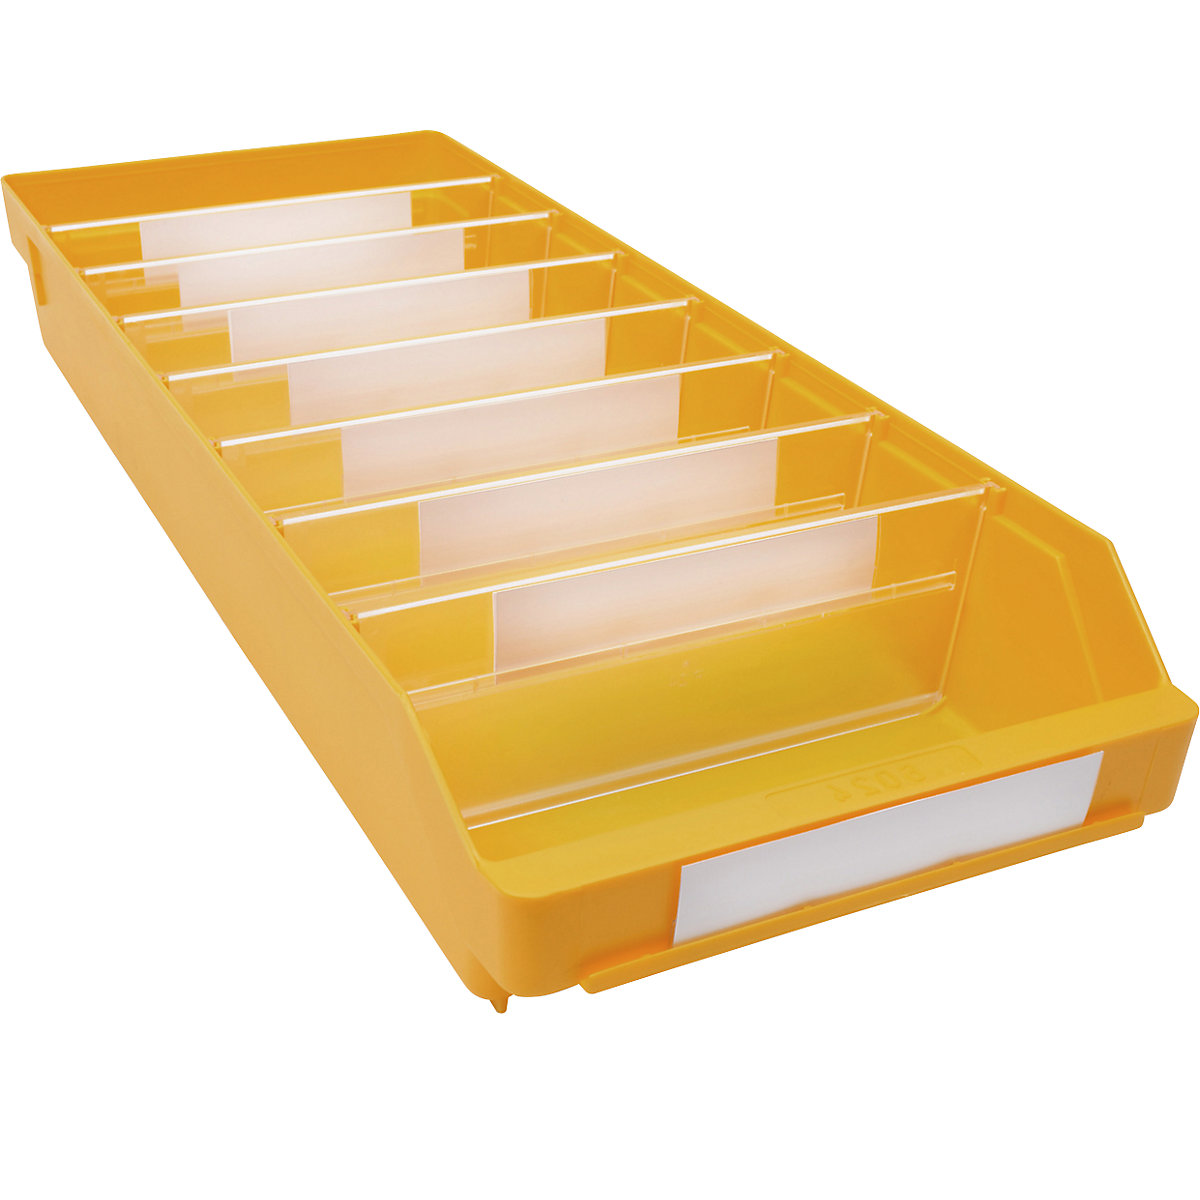 Kutija za regale od polipropilena otpornog na udarce – STEMO, u žutoj boji, DxŠxV 600 x 240 x 95 mm, pak. 15 kom.-18